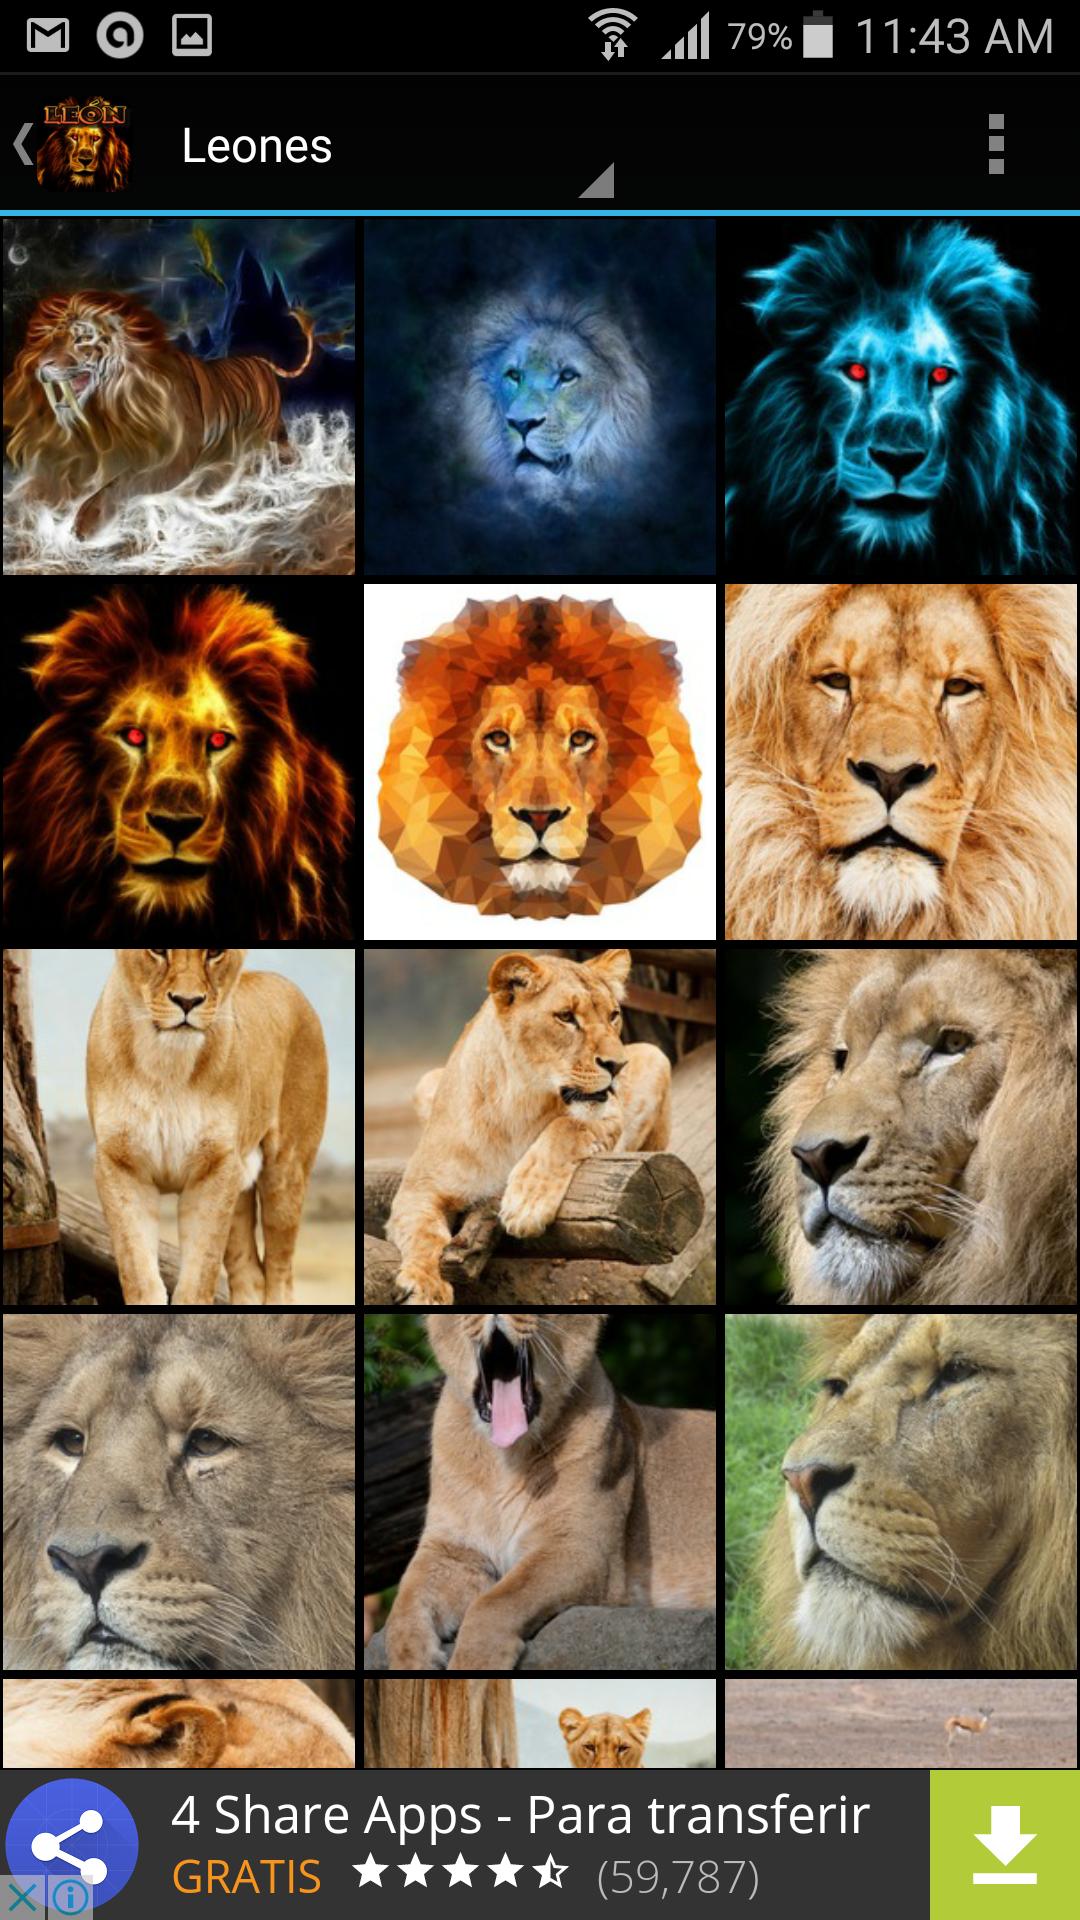 Imágenes para fondos de pantalla de leones APK for Android Download